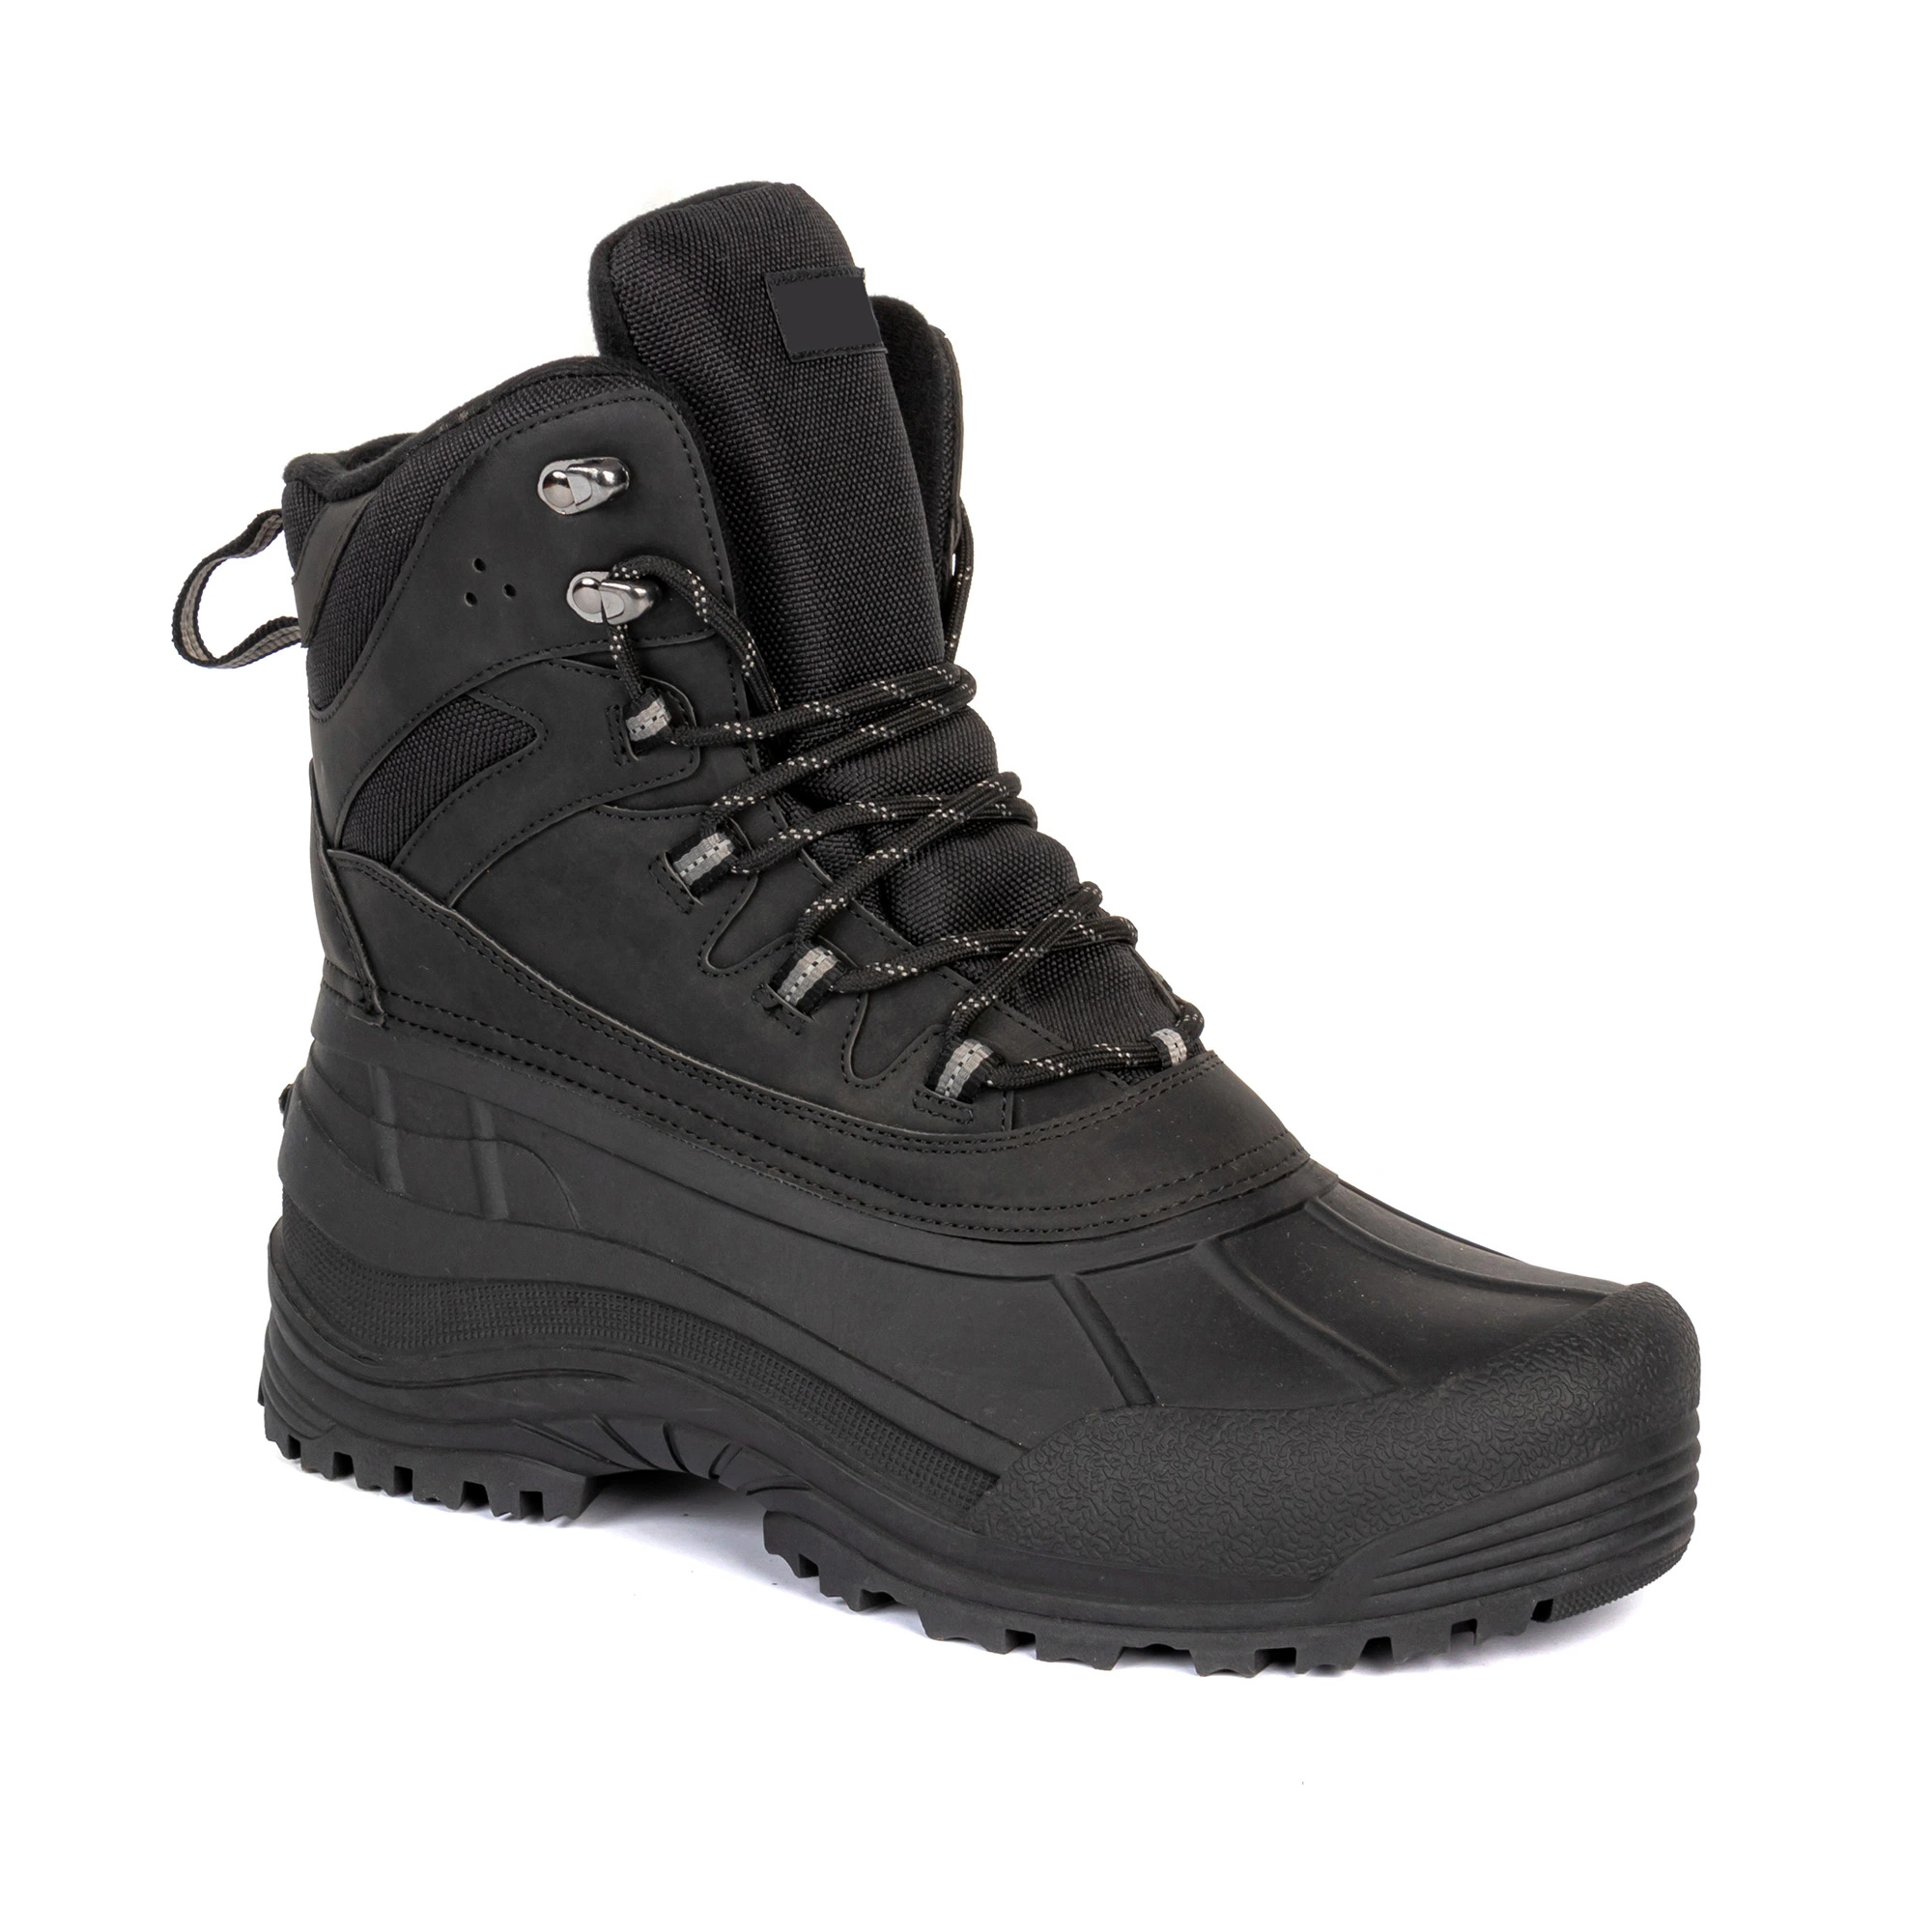 Zapatos de seguridad con suela de PU antideslizante resistente al agua para hombres, botas de invierno industriales.